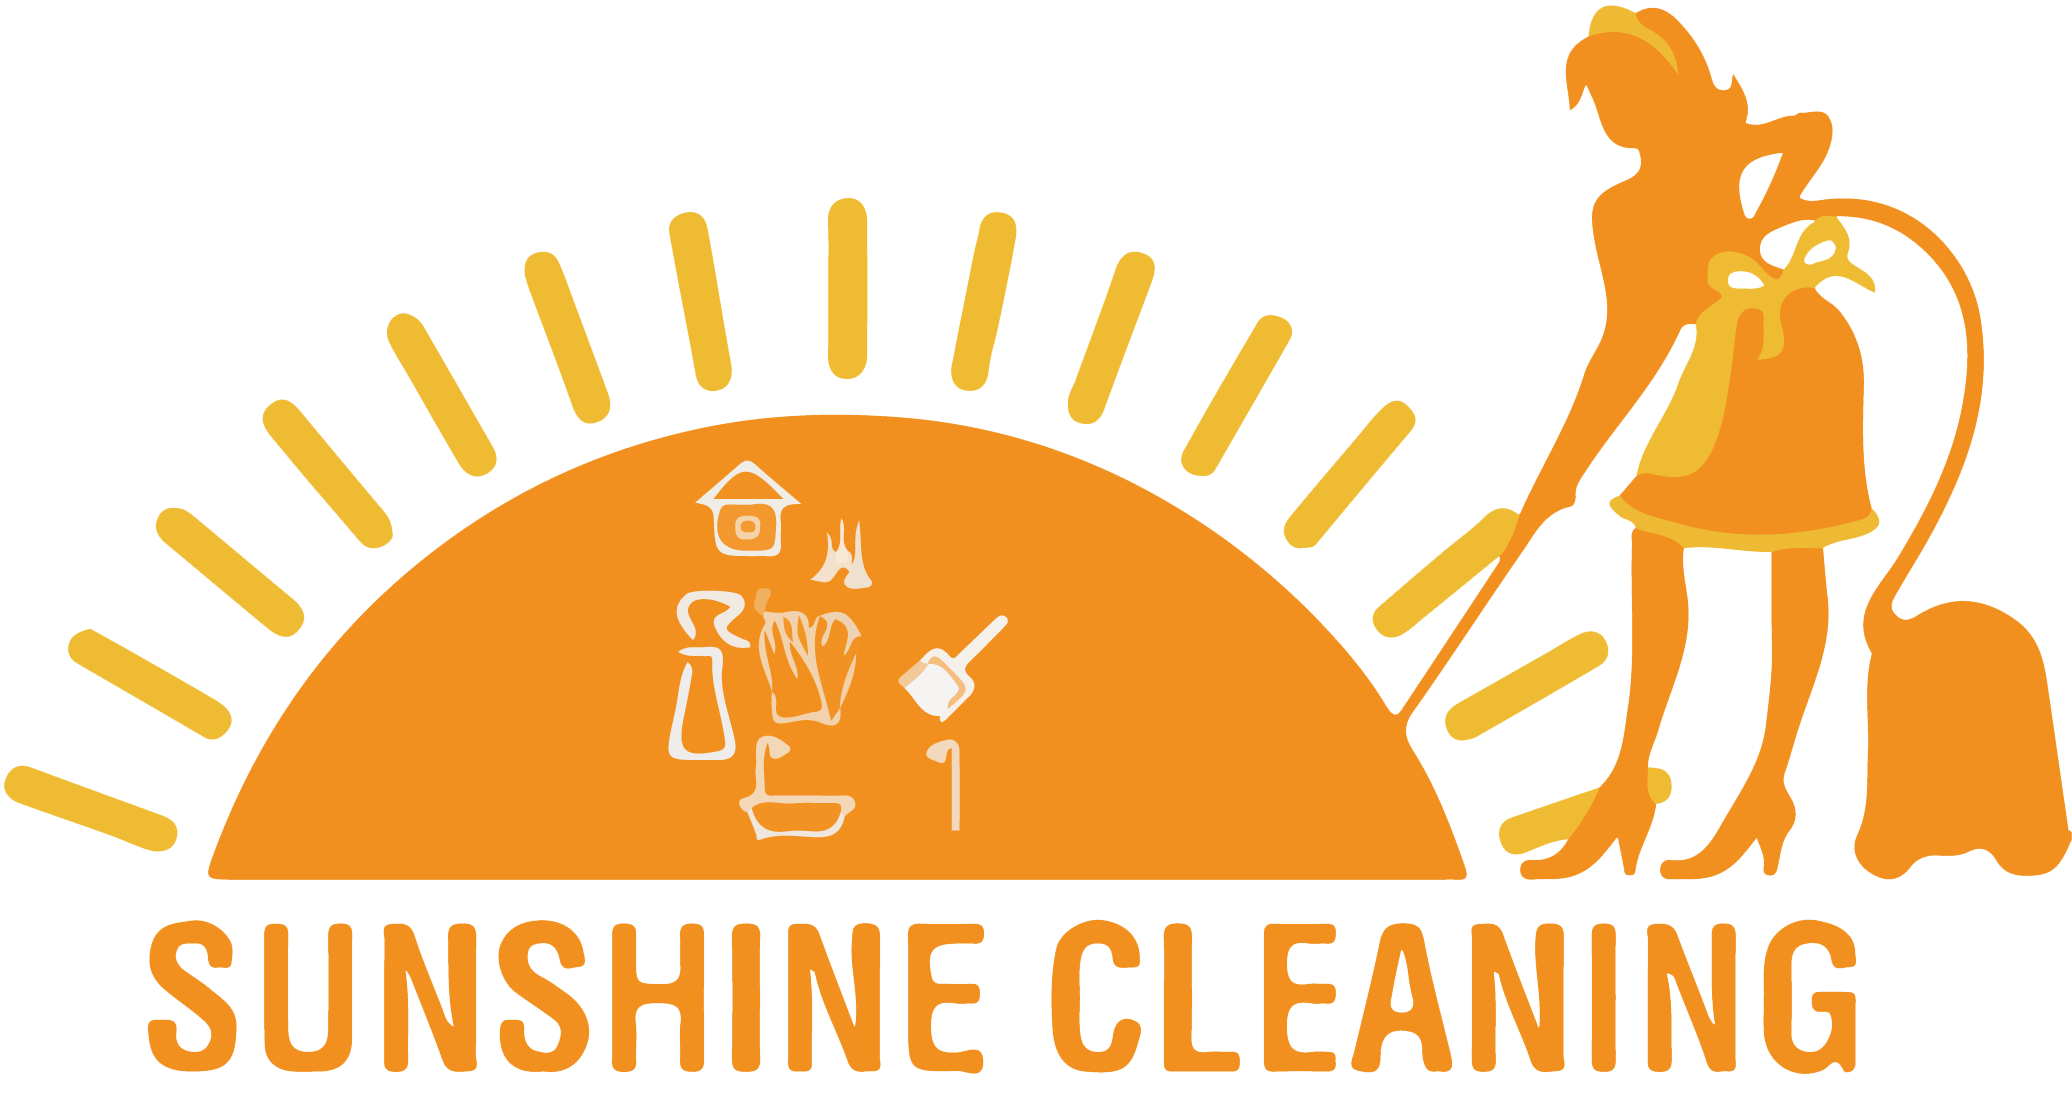 Logo Sunshine Cleaning - Ihr Profi in Sachen Sauberkeit